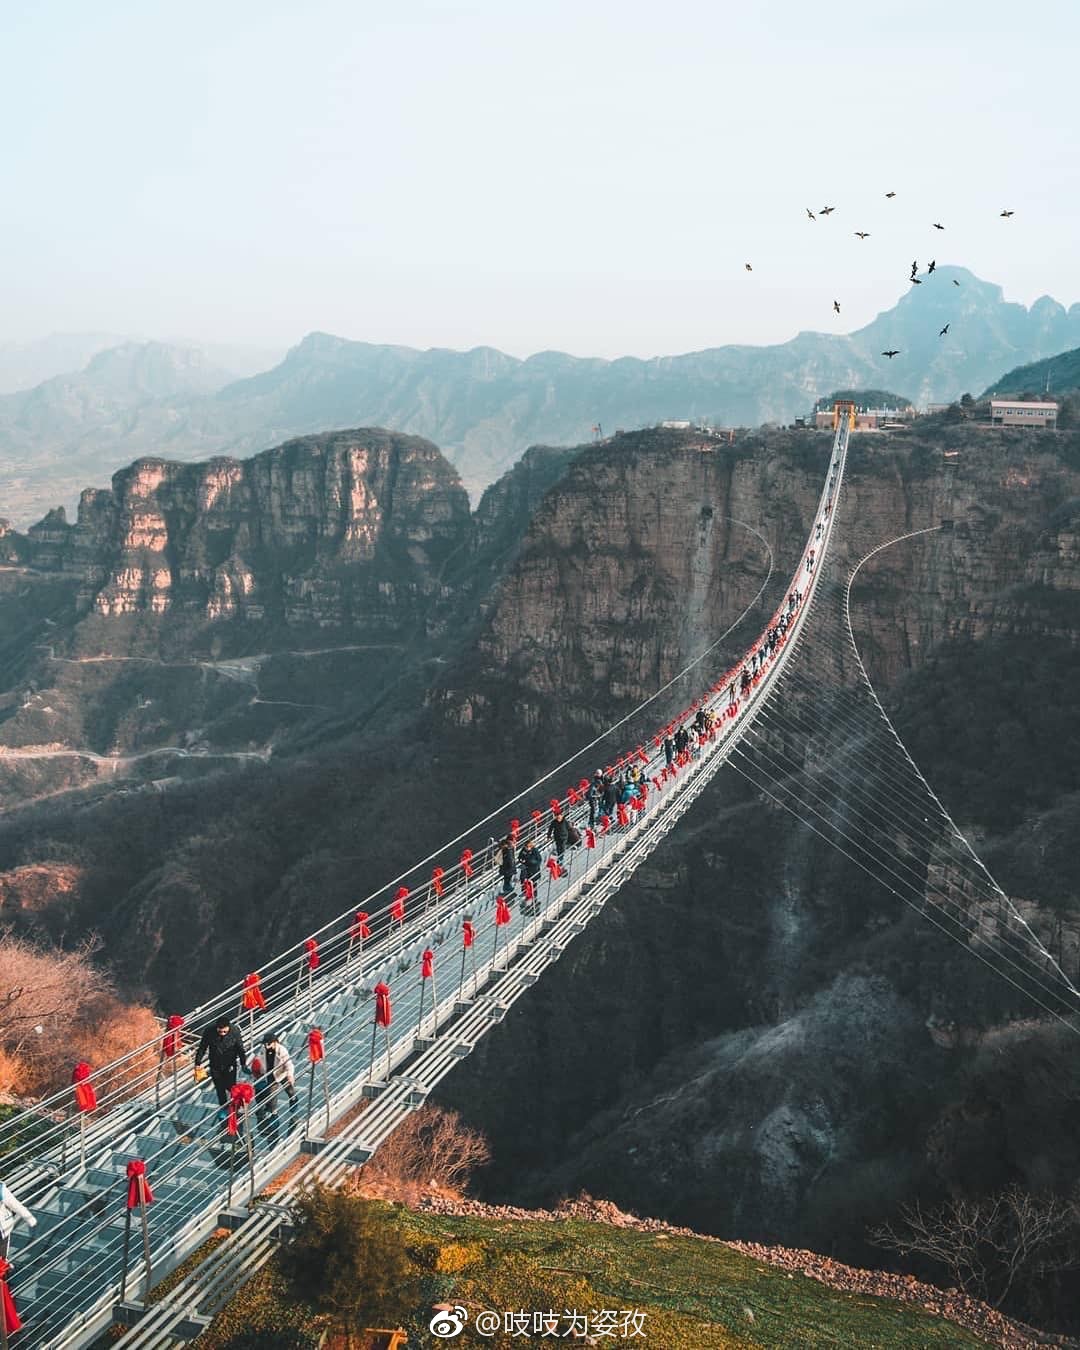 位于平山的红崖谷玻璃桥,全长488米,宽4米